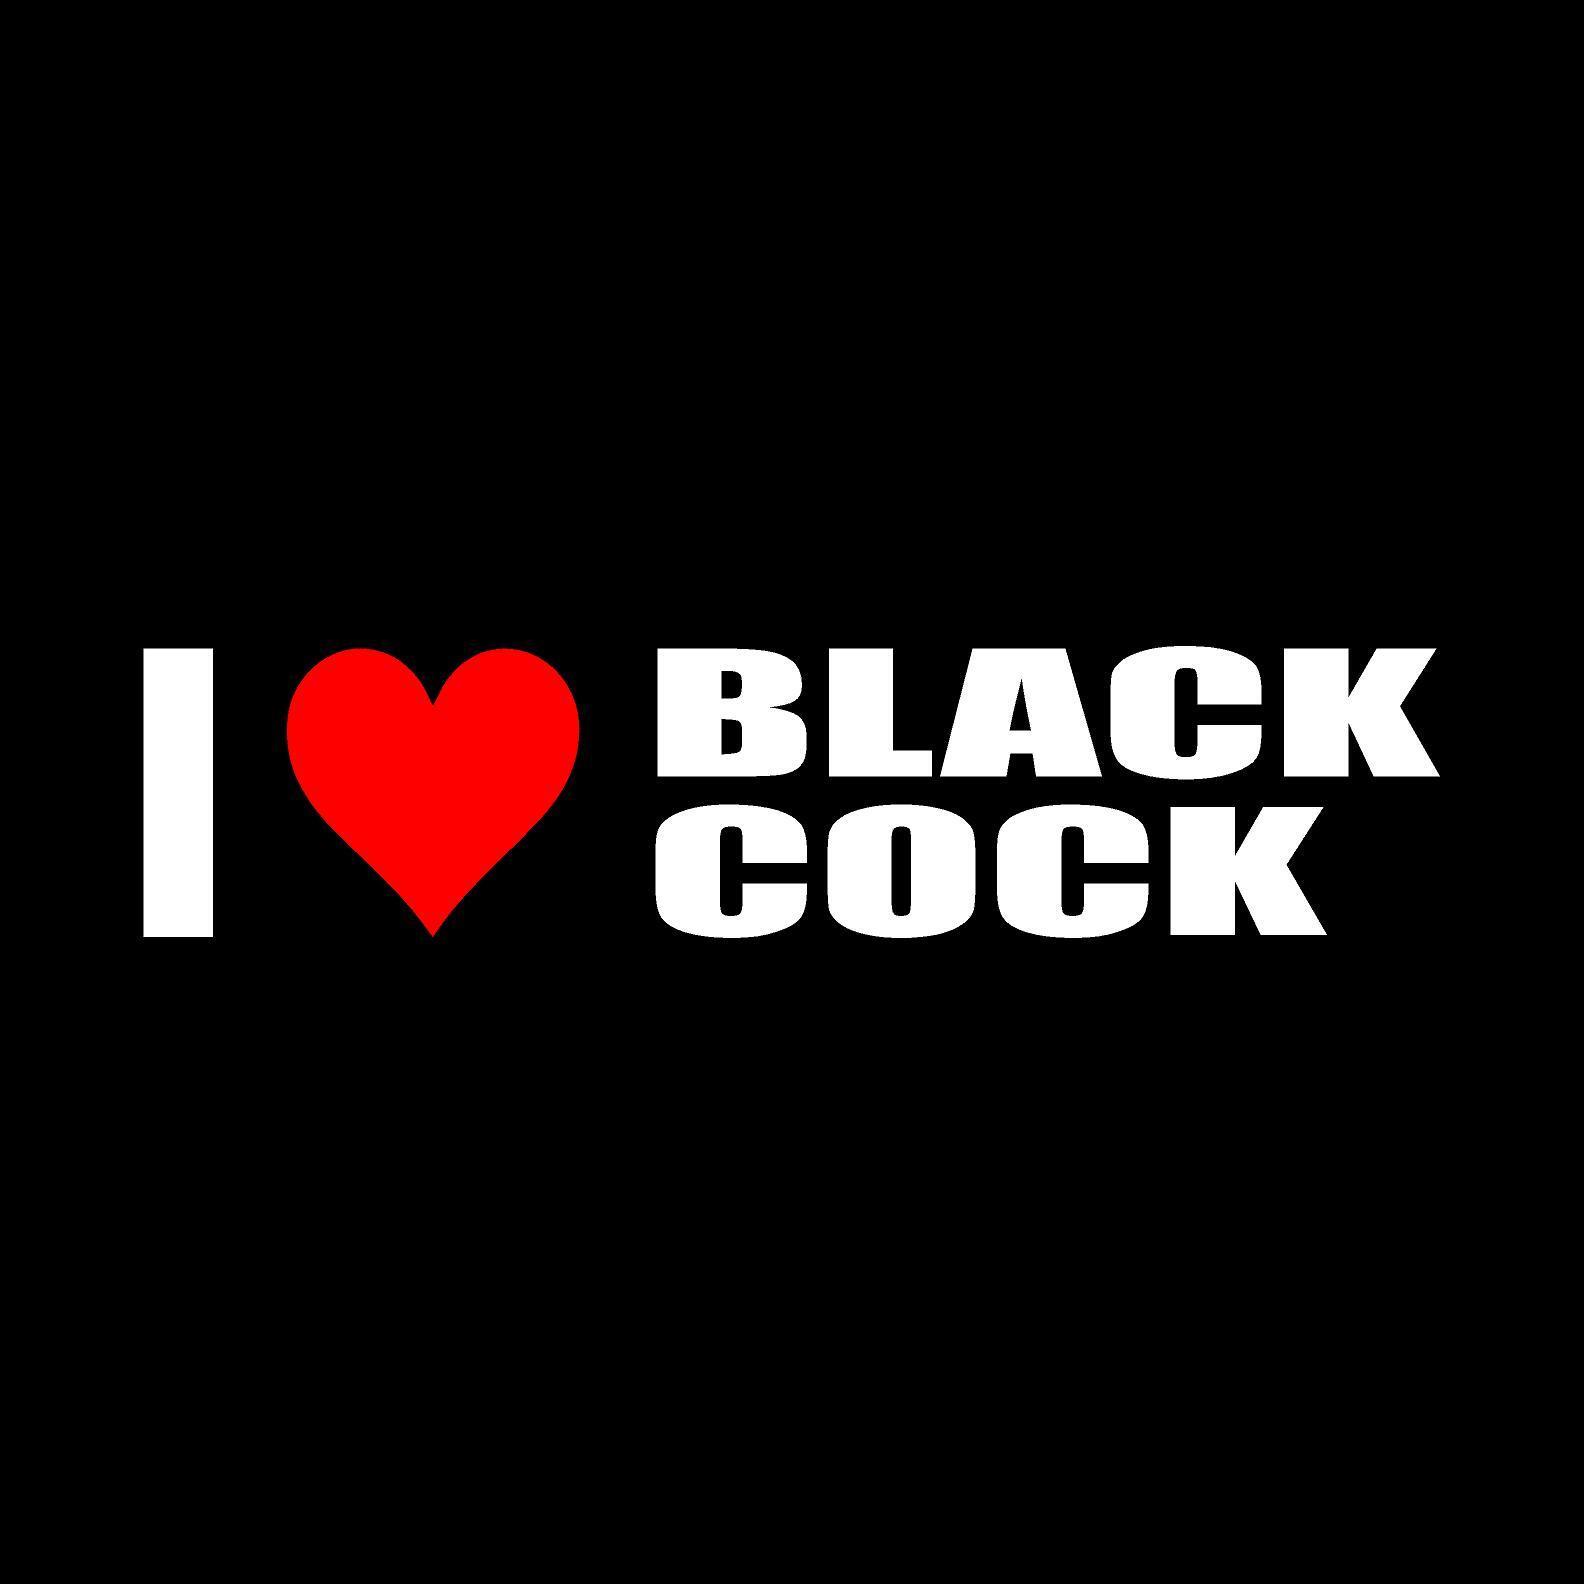 chie kudo add photo we love black cock